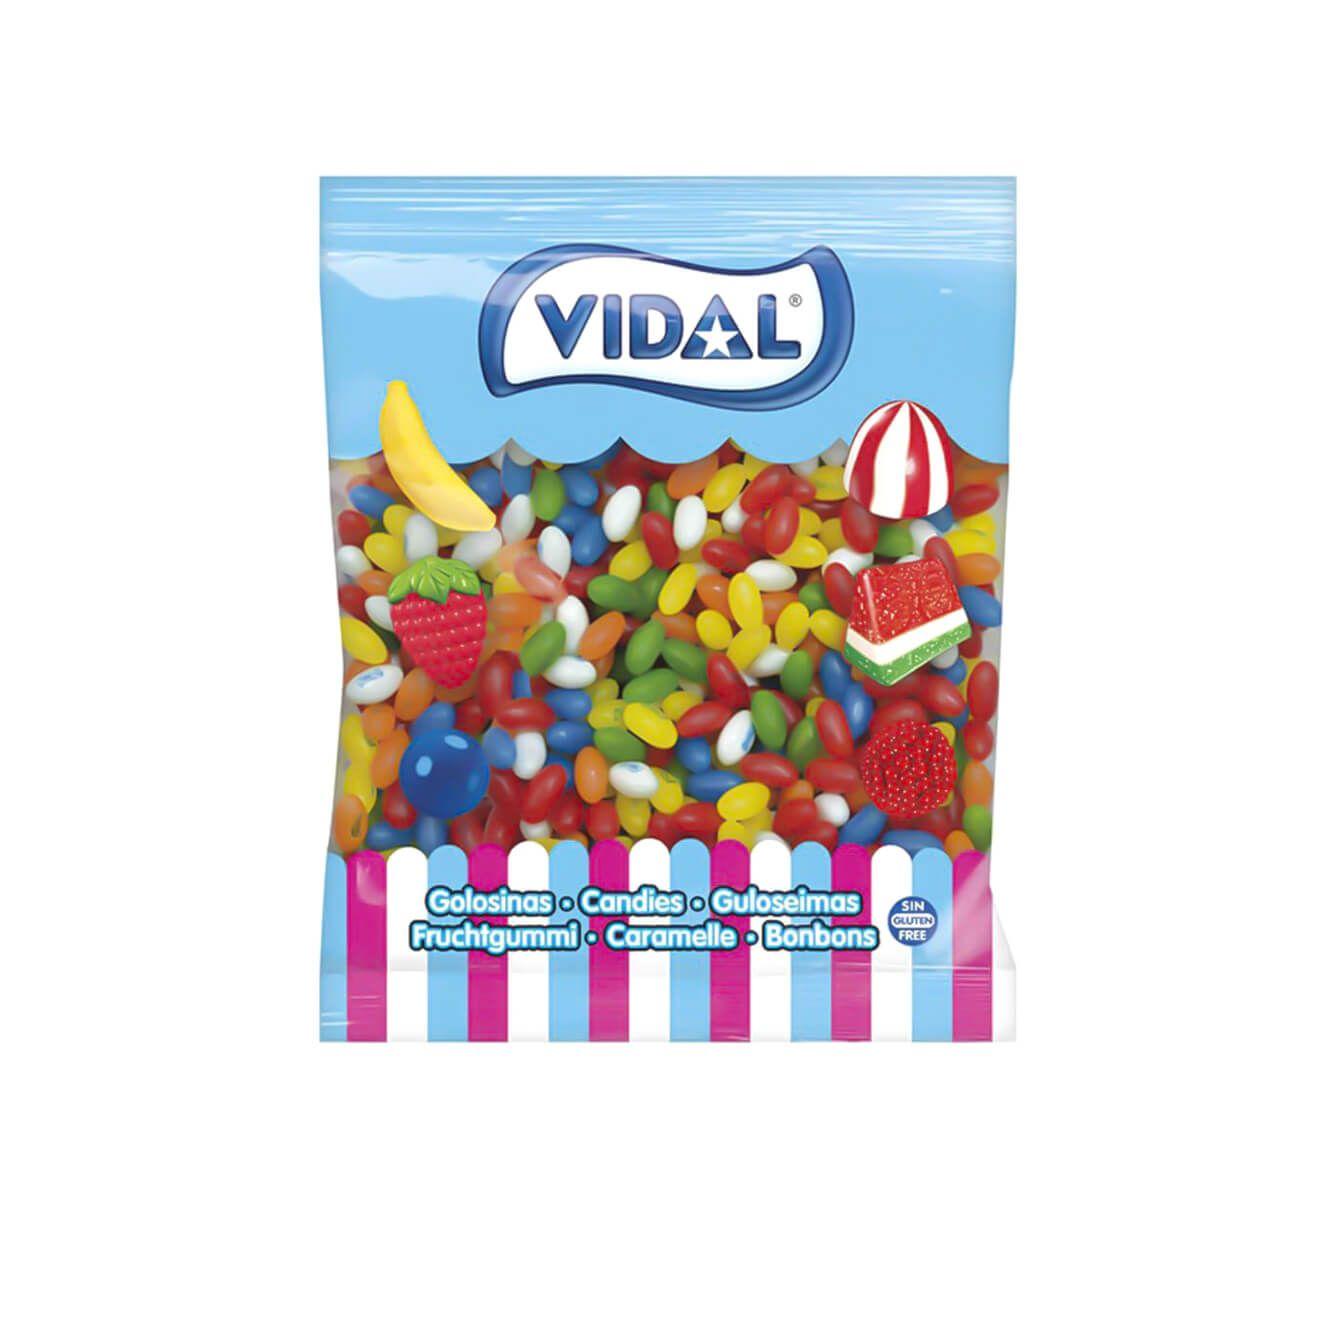 Vidal - Gominolas vidal Glas Frut bolsa 2 Kg - Pequeñas grageas multicolor de diversos sabores frutales. Su interior dulce terminará de conquistarte - Sin Gluten y sin Grasa